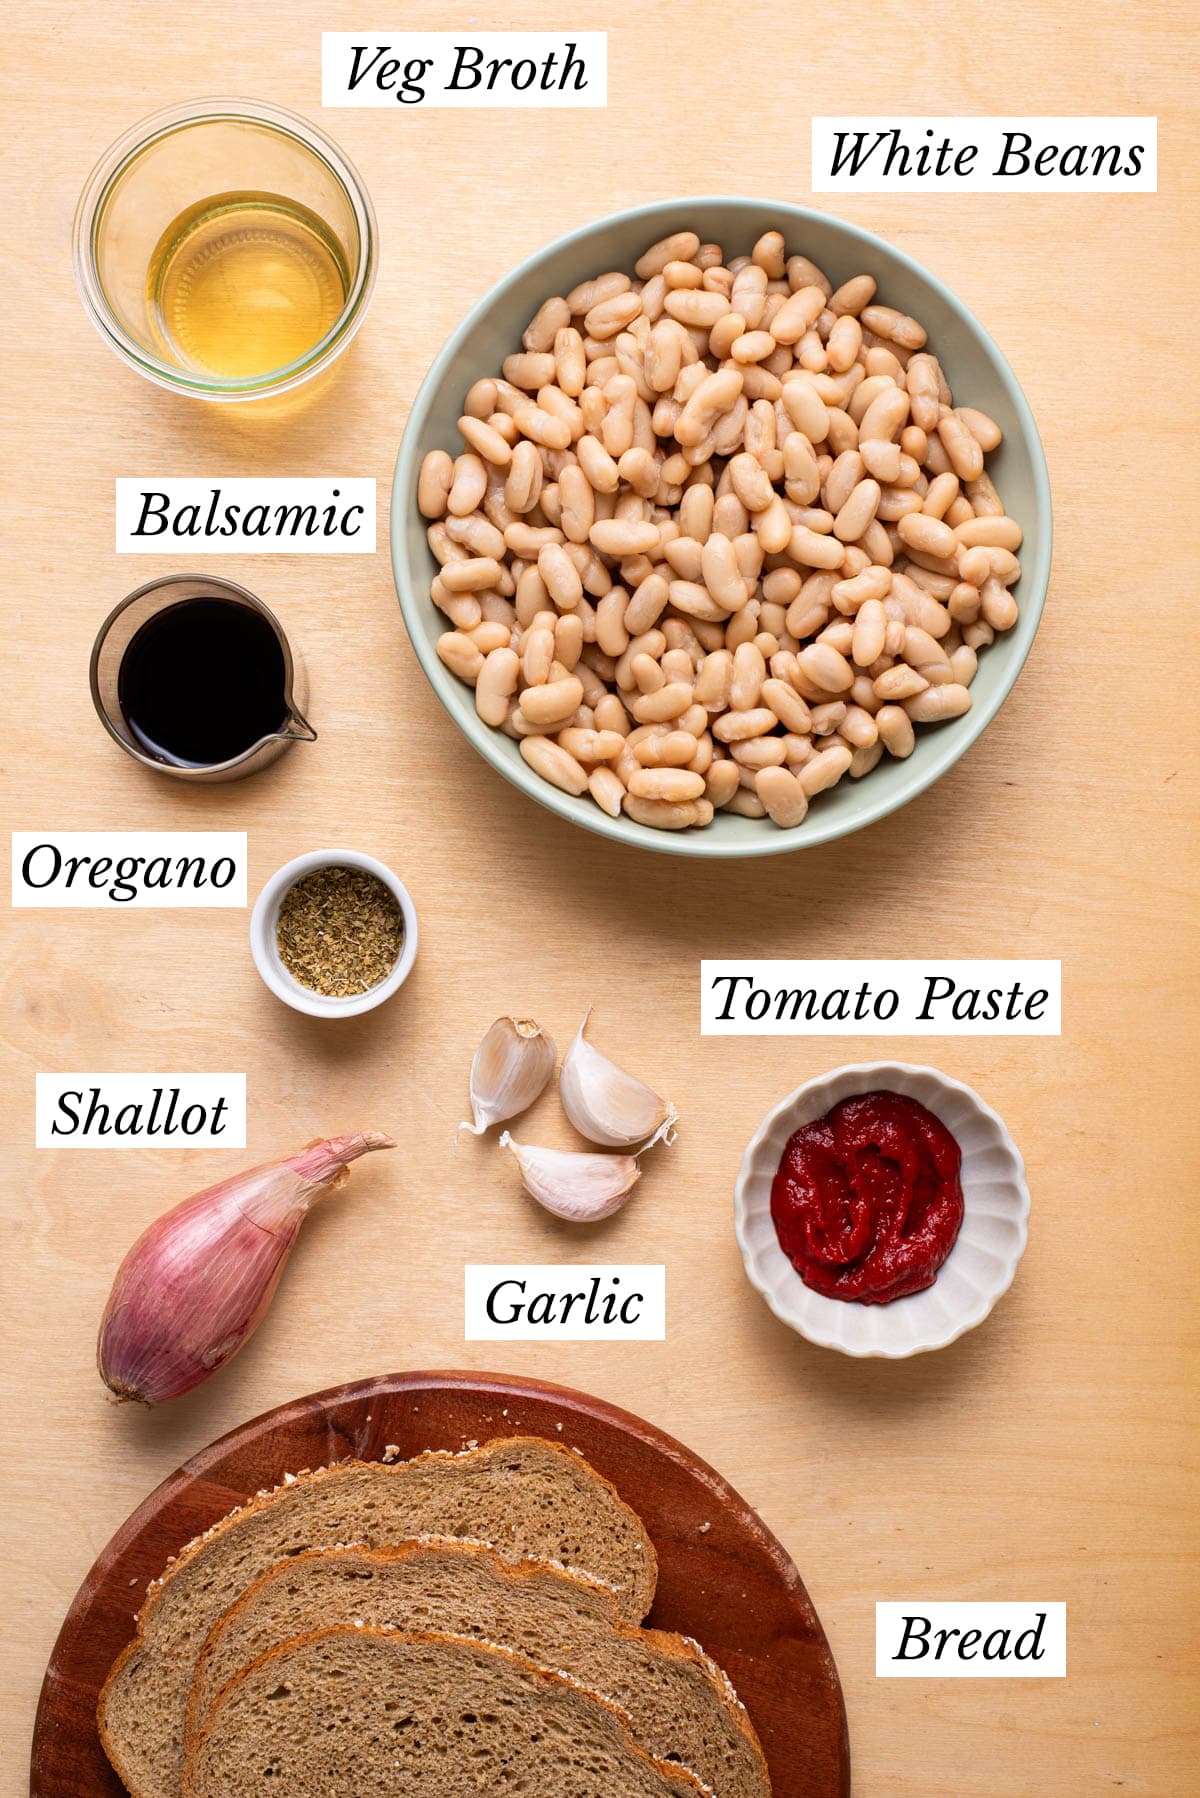 Ingredients gathered to make Tuscan white beans.